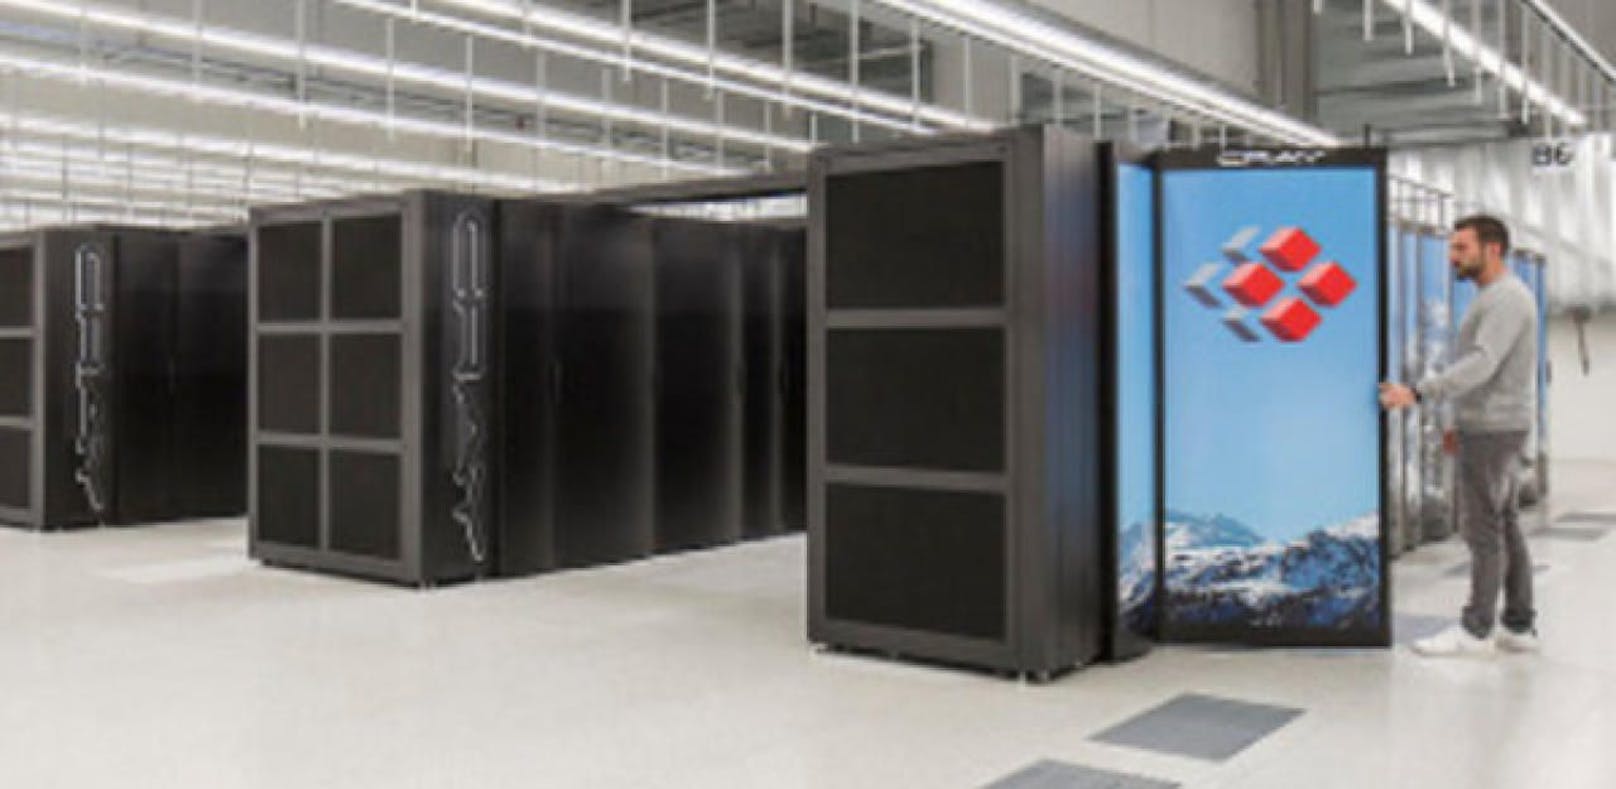 Schweizer Supercomputer ist der schnellste in Europa